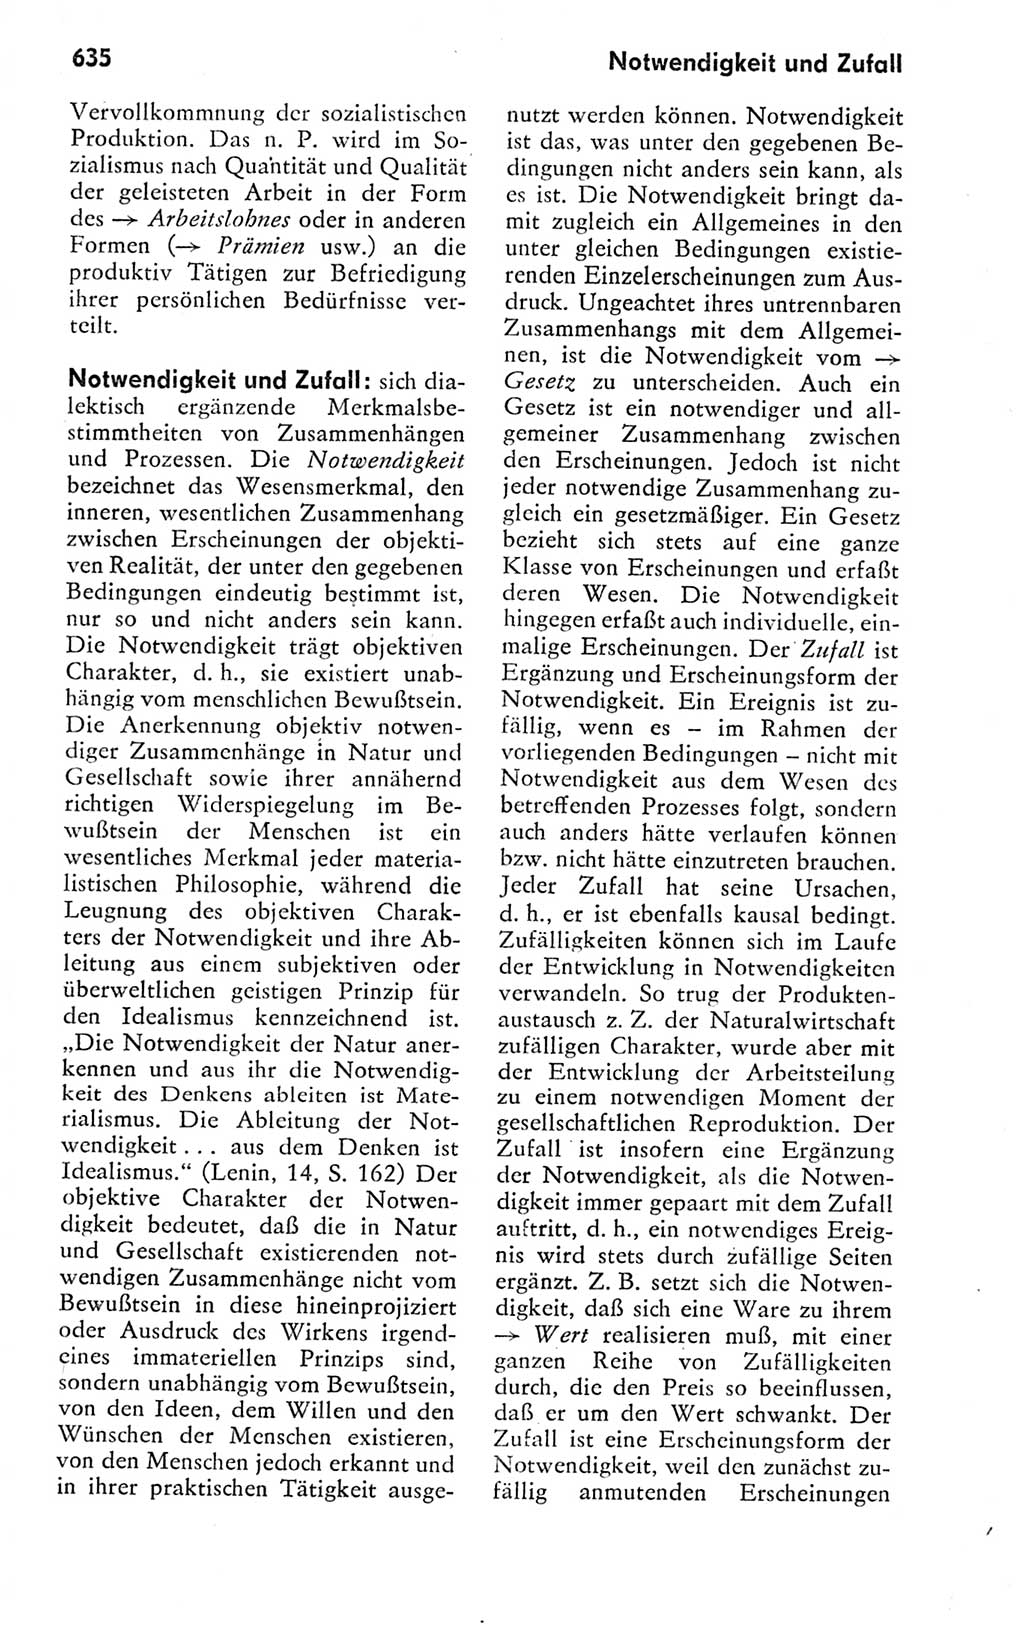 Kleines politisches Wörterbuch [Deutsche Demokratische Republik (DDR)] 1978, Seite 635 (Kl. pol. Wb. DDR 1978, S. 635)